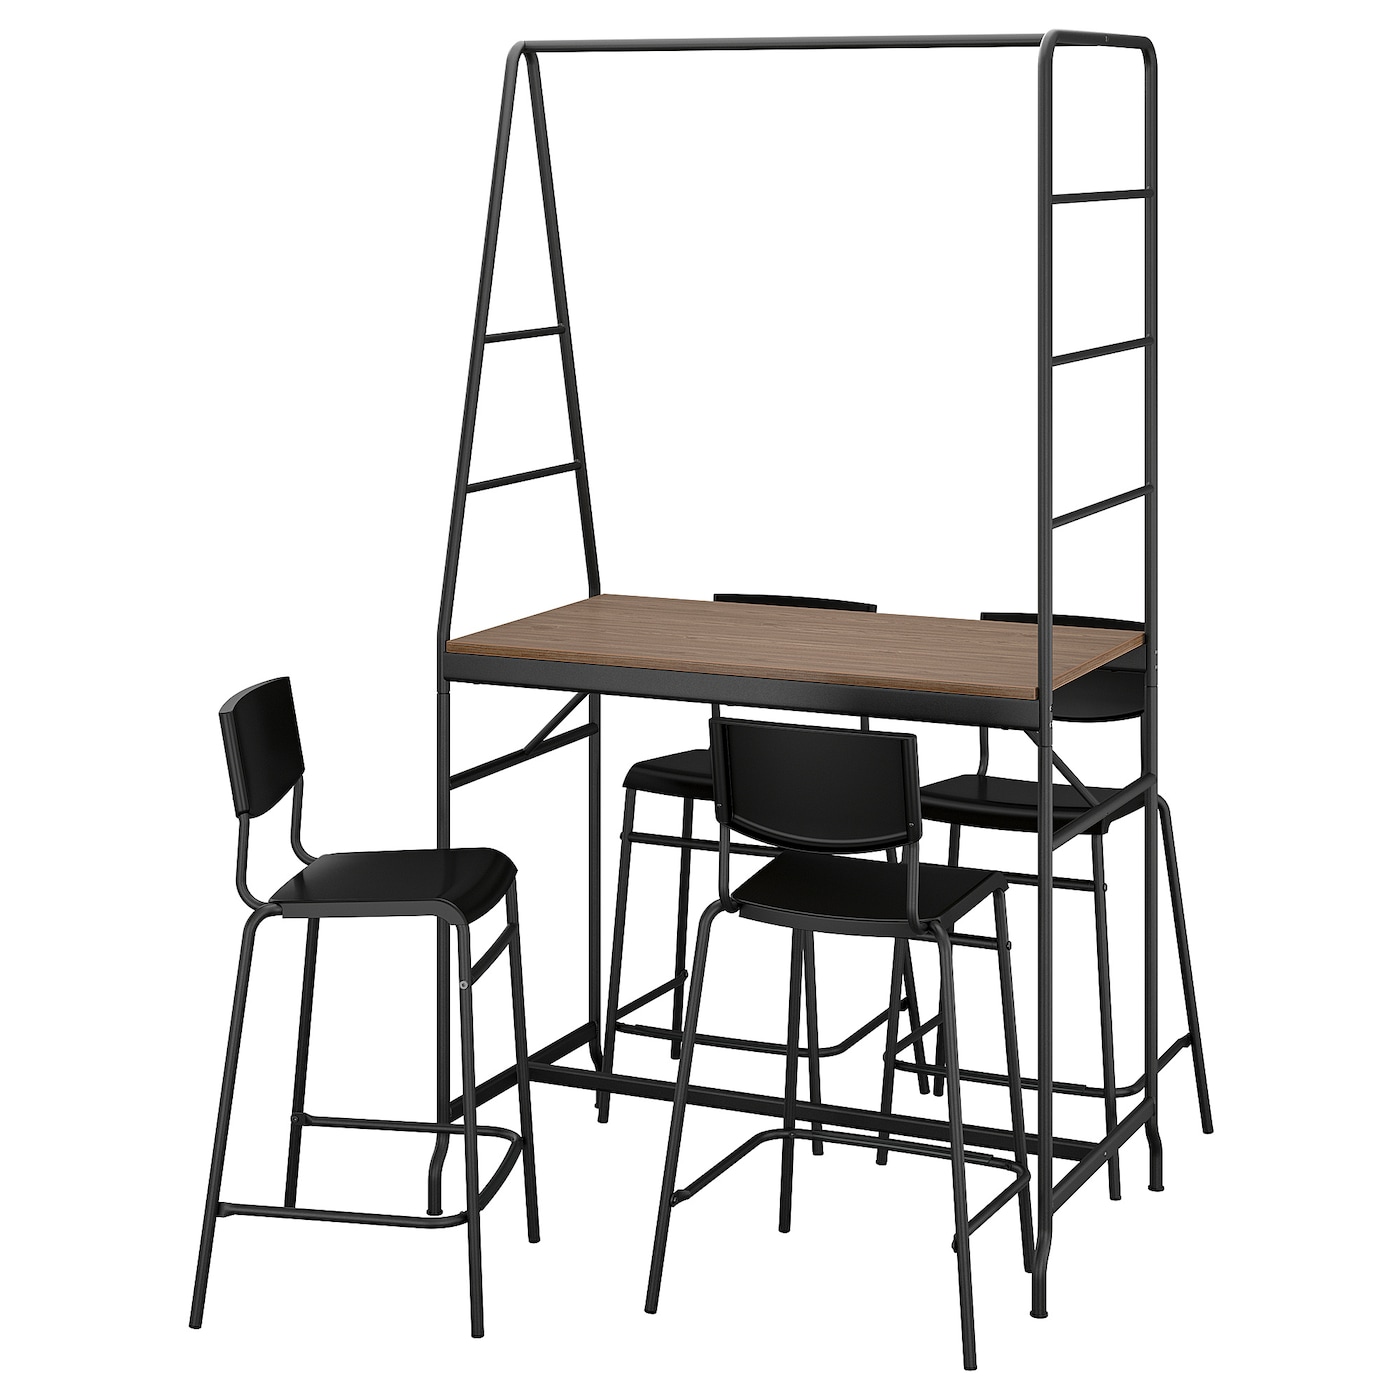 Комплект барного стола и барных стульев - HÅVERUD/HАVERUD/STIG IKEA, ХОВЕРЮД/СТИГ ИКЕА, 192/93х105Х66 см, смёрный/коричневый